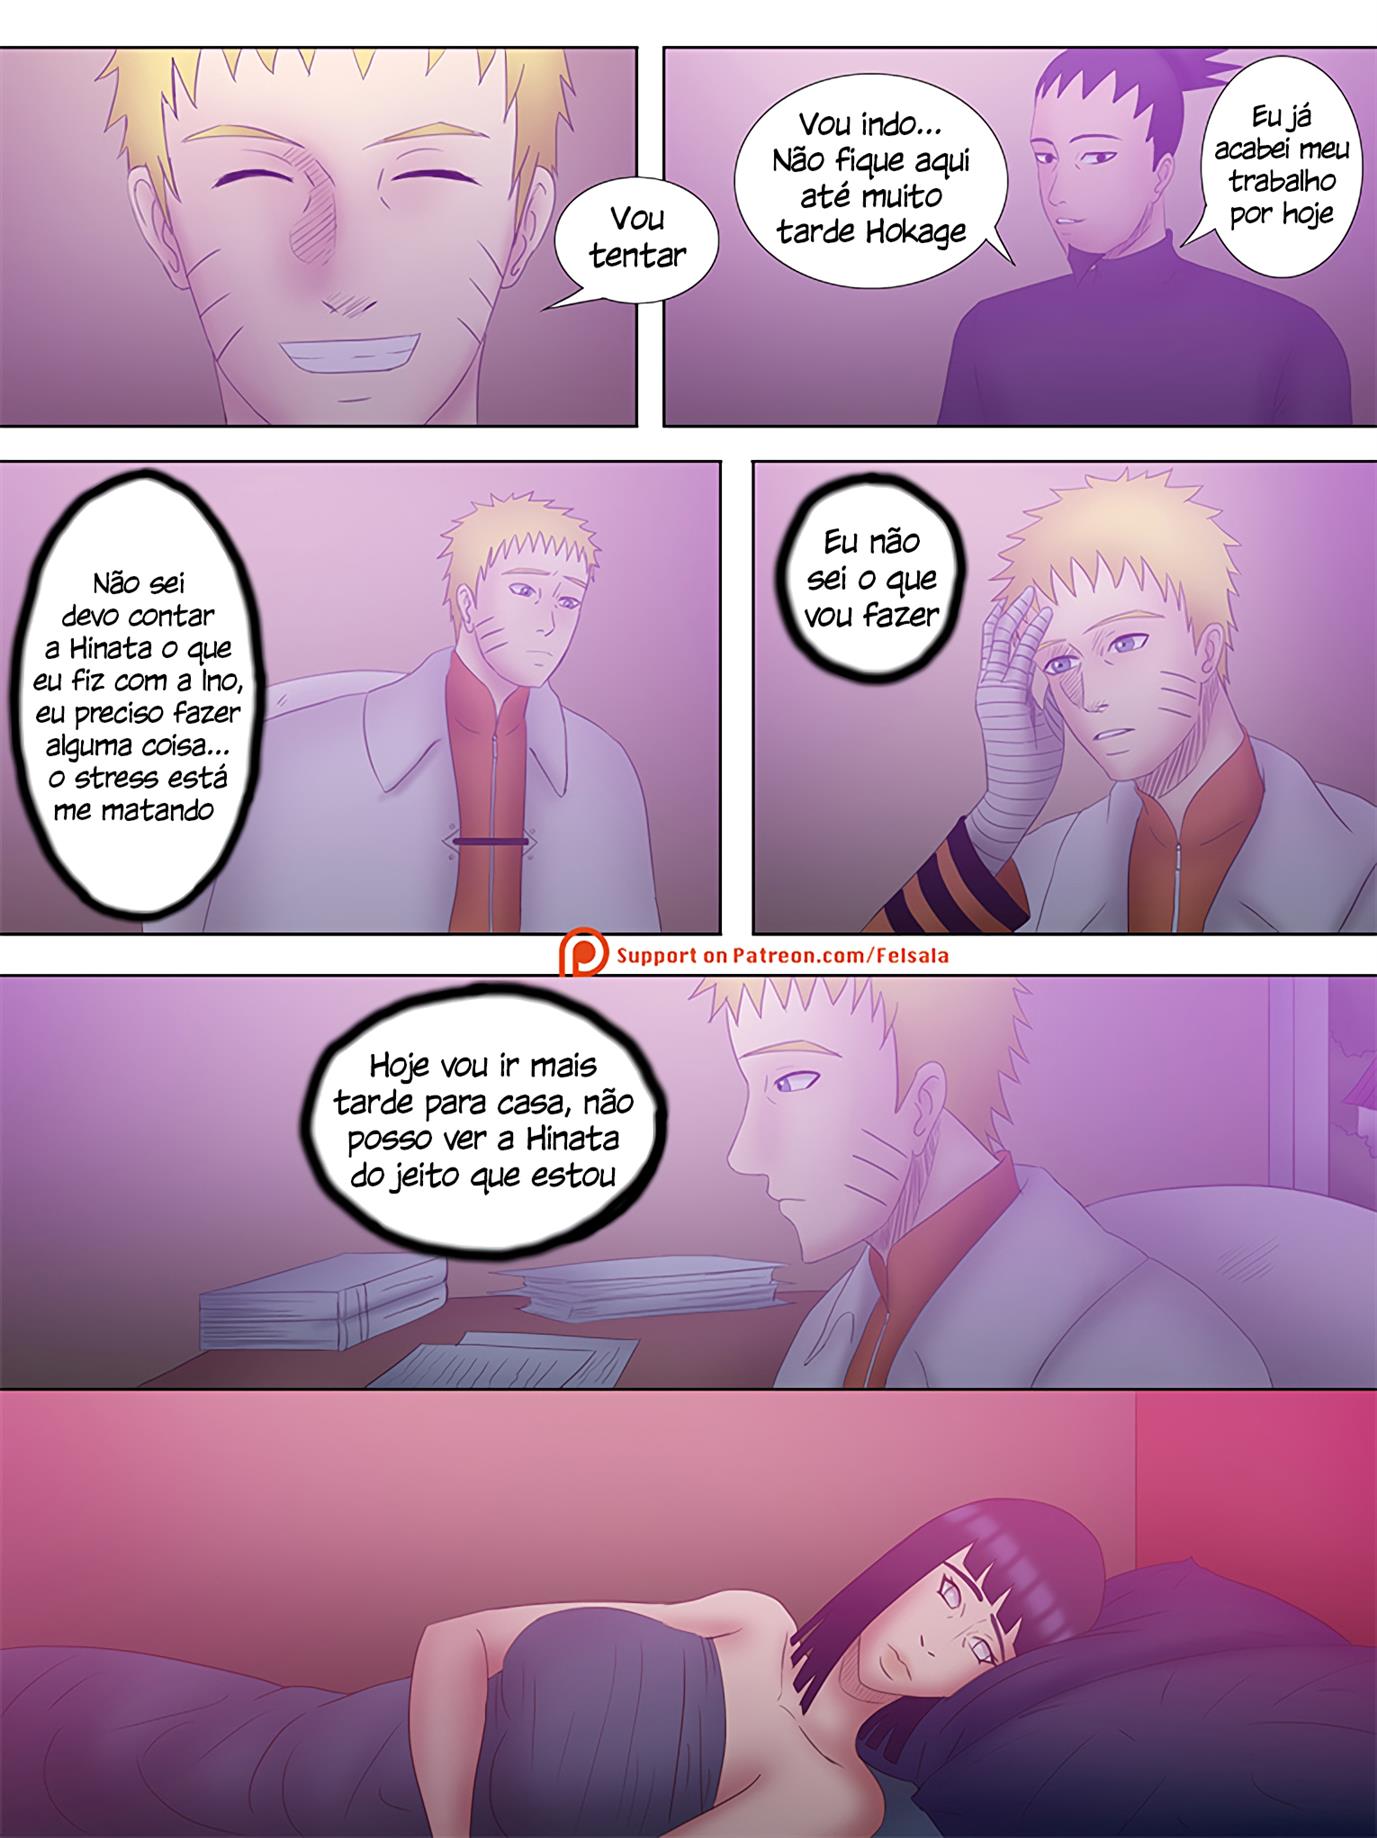 Naruto em troca de casais 1